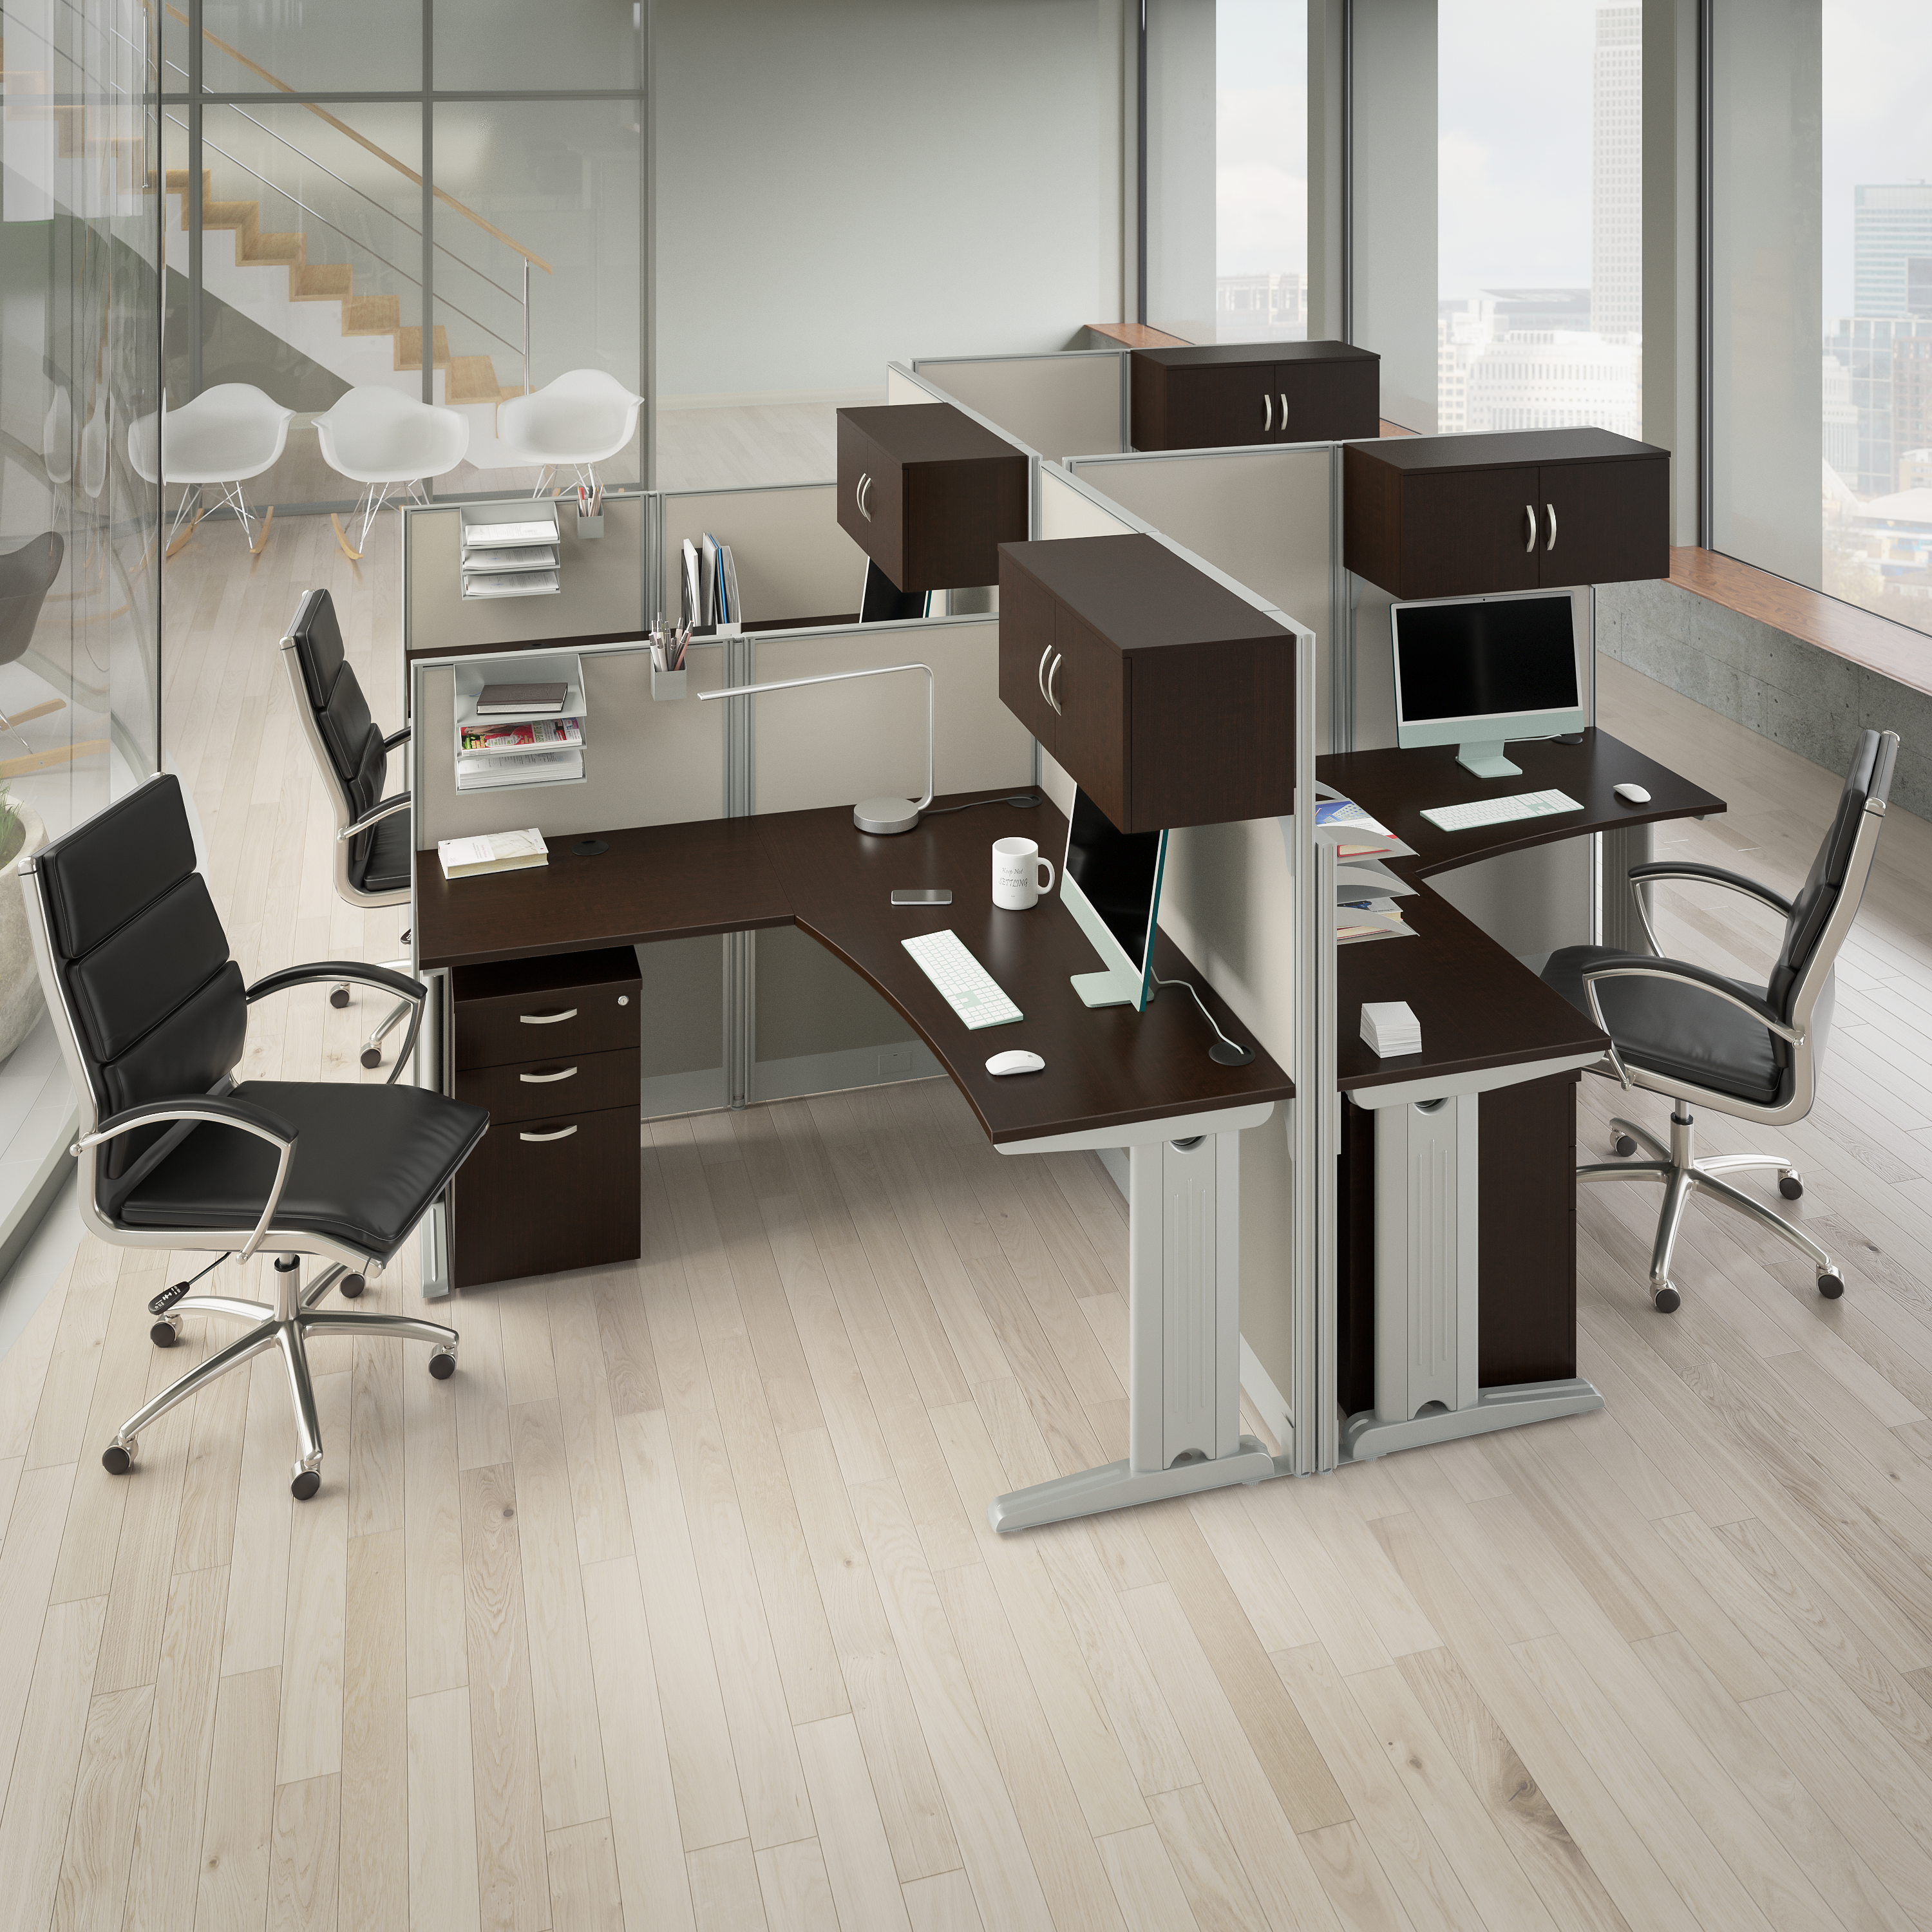 Shop Bush Business Furniture Office in an Hour 65W x 65D L Shaped Cubicle Desk 08 WC36894-03K #color_mocha cherry